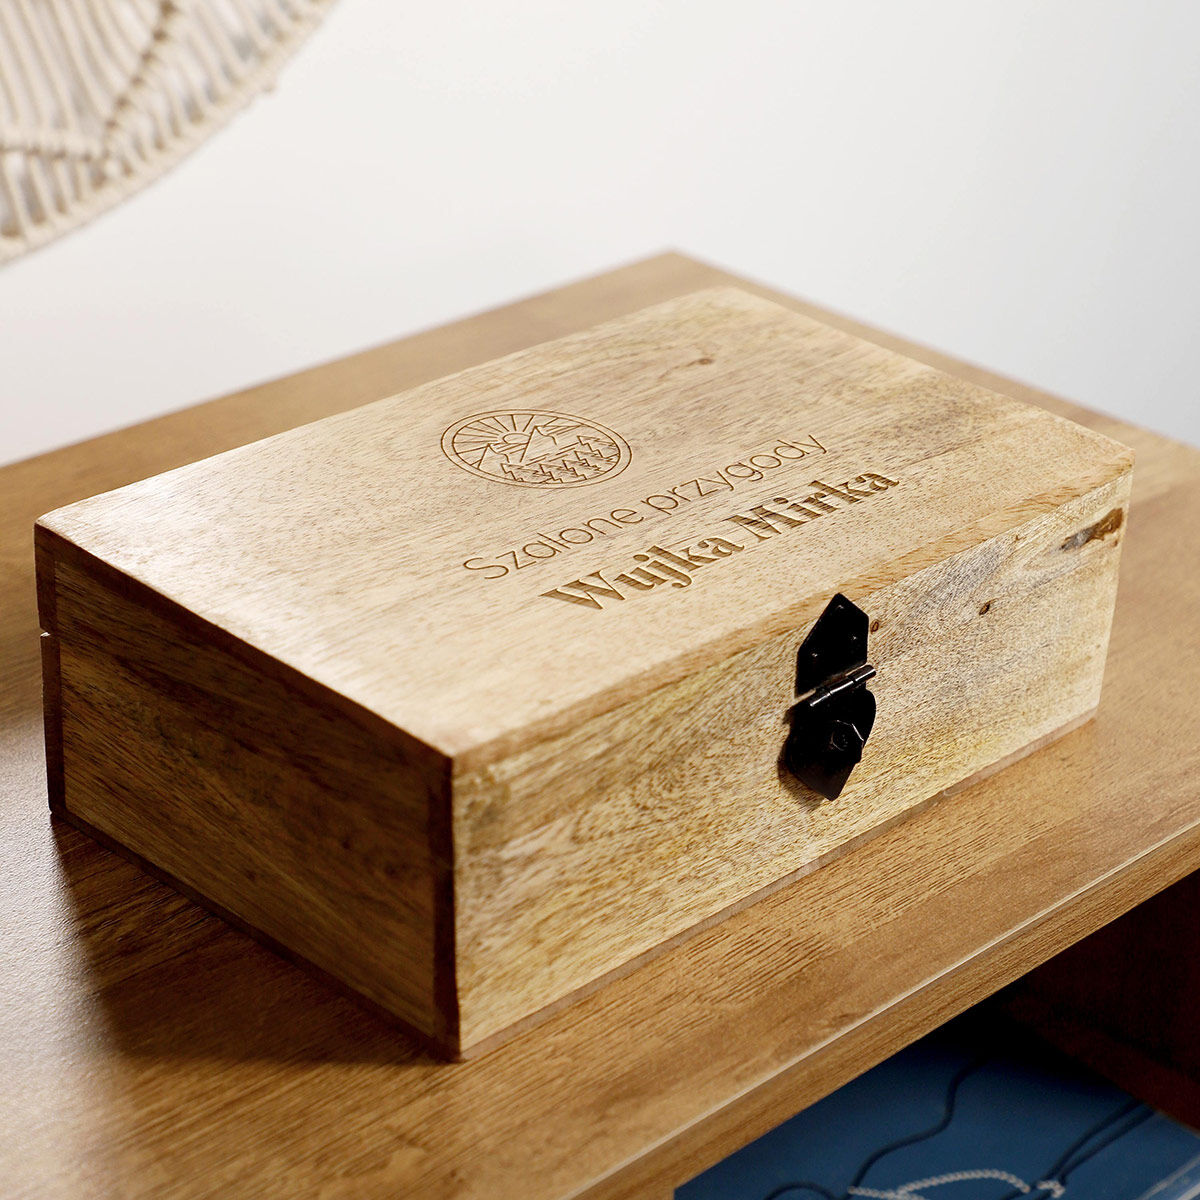 Szkatułka drewniana 22x14x8 cm z personalizacją DLA WUJKA